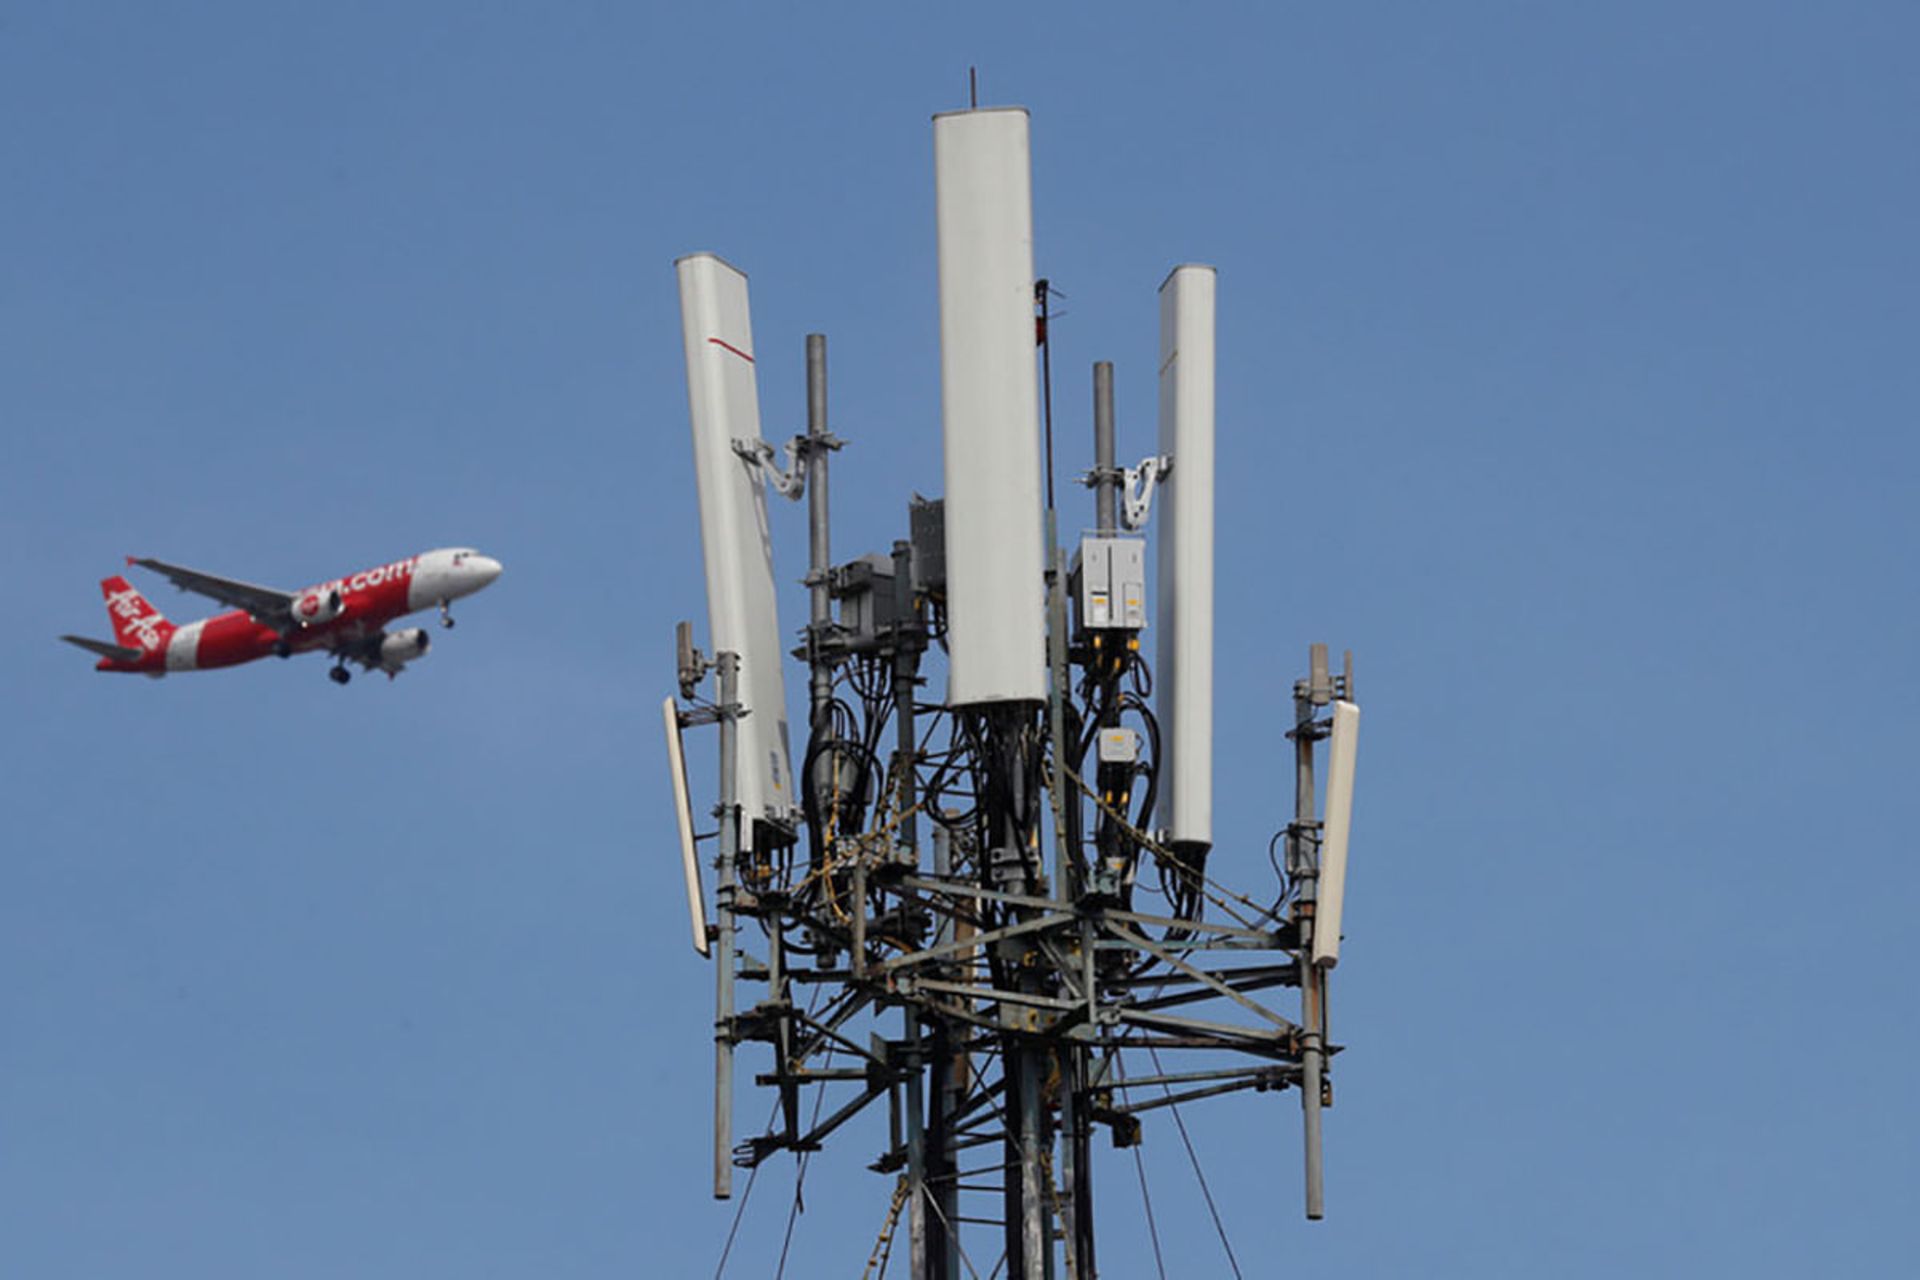 نگرانی های ناشی از اختلال در فرود هواپیماها به دلیل تداخل با شبکه 5G